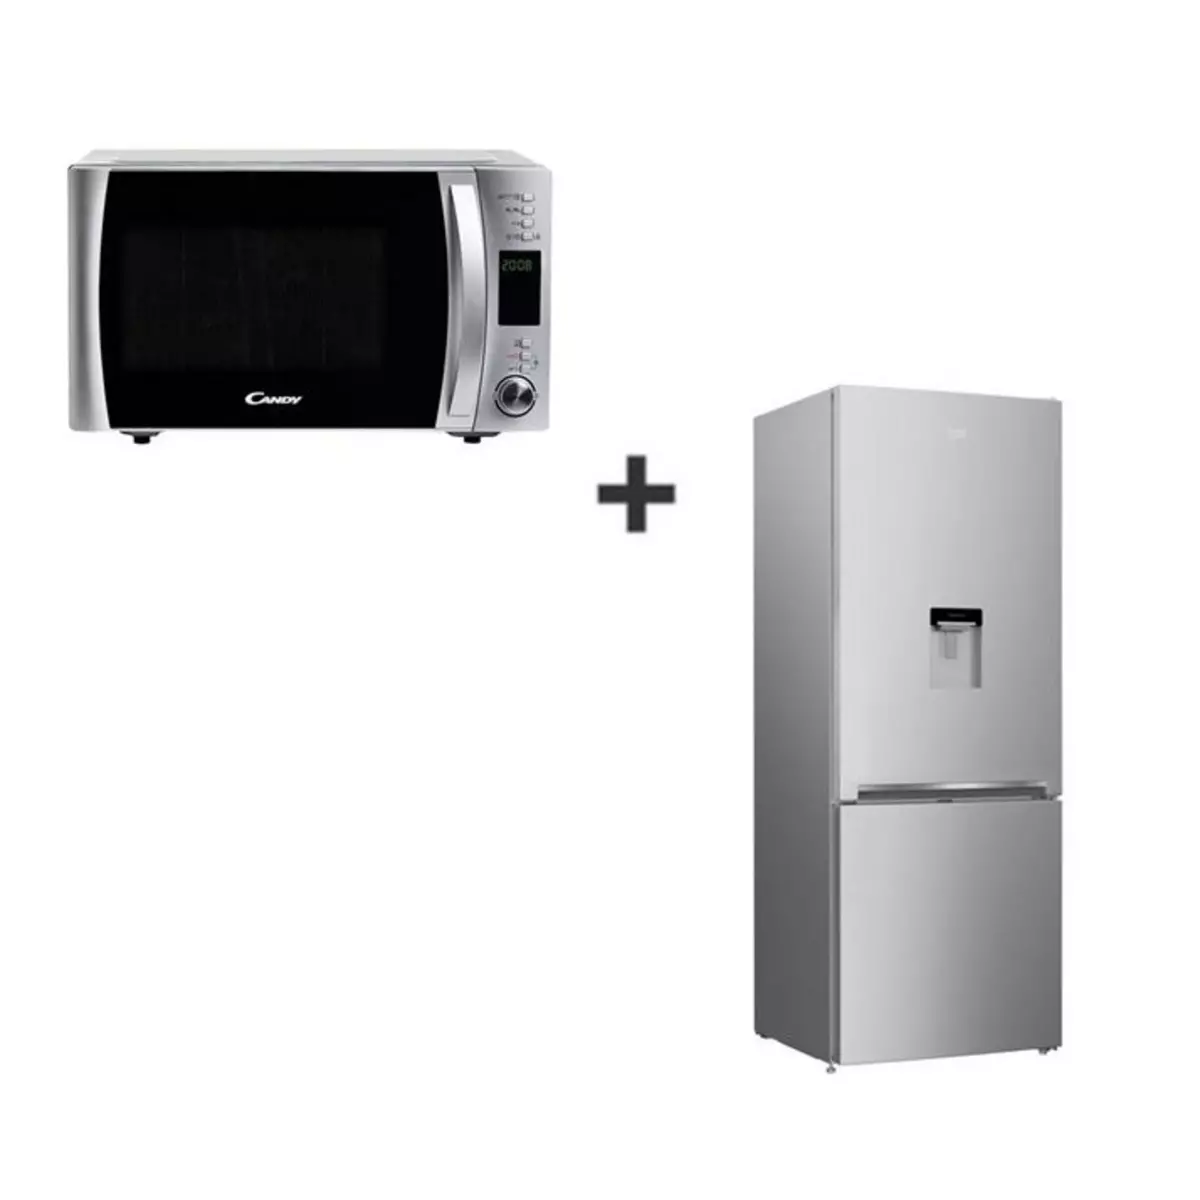 BEKO Réfrigérateur combiné CRCSE460K20DS, 464 L, Froid statique MinFrost + CANDY Micro-ondes Gril CMXG 30DS